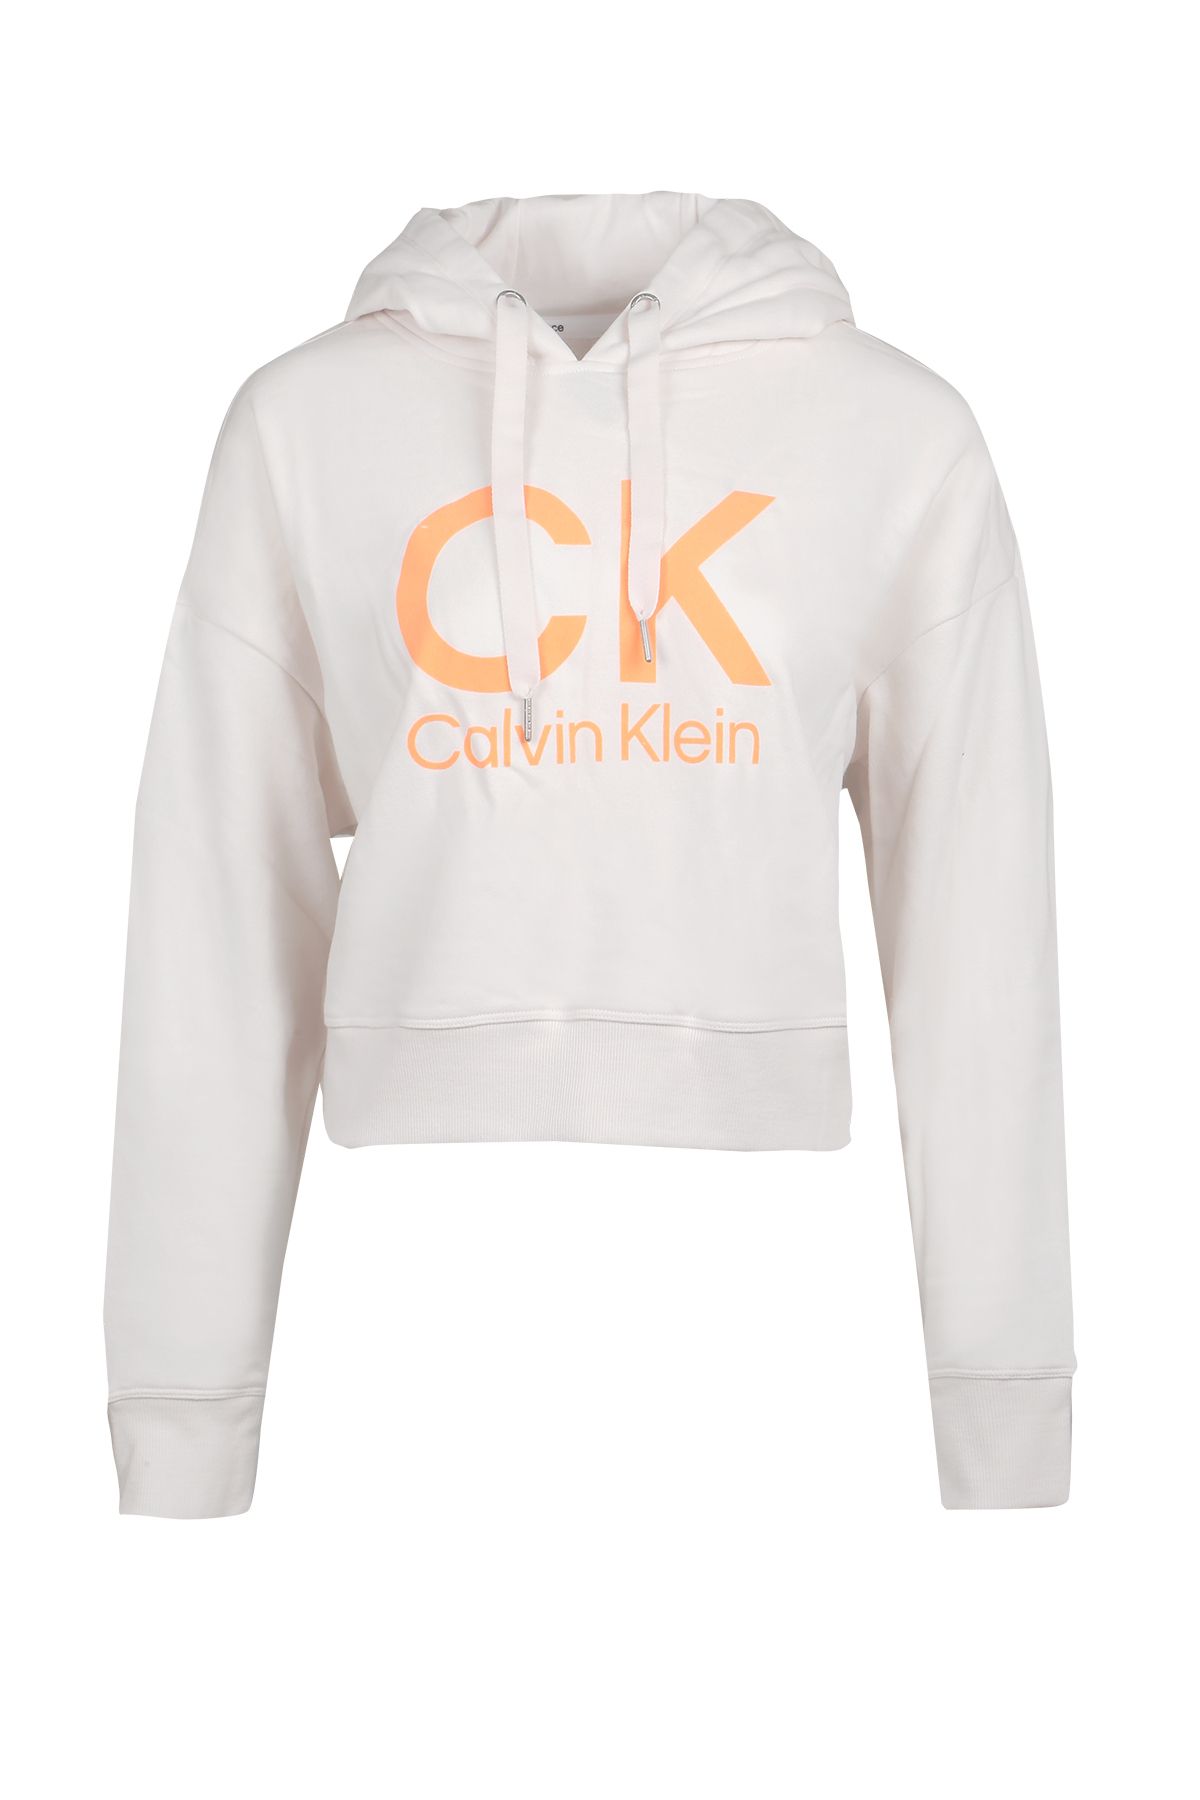 Calvin Klein Kadın Sweatshırt Pf2t2292-0ly